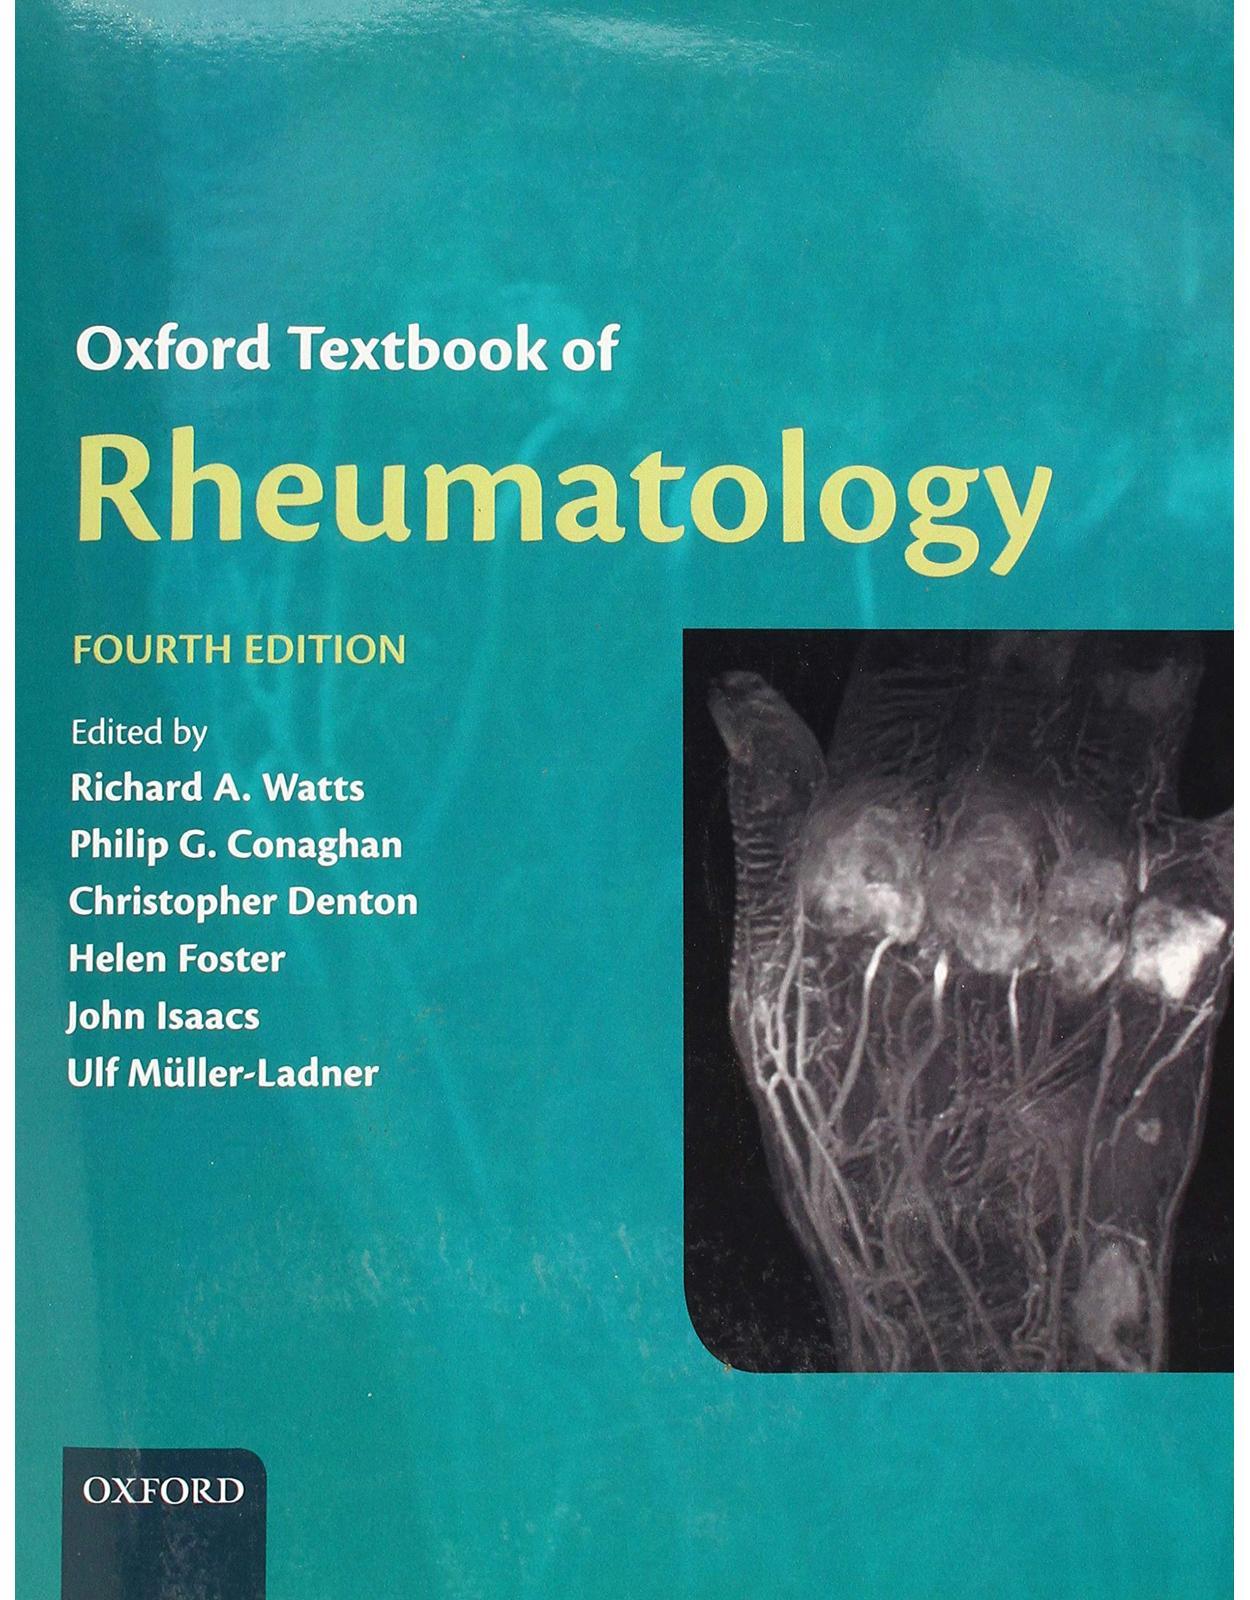 Oxford Textbook of Rheumatology 